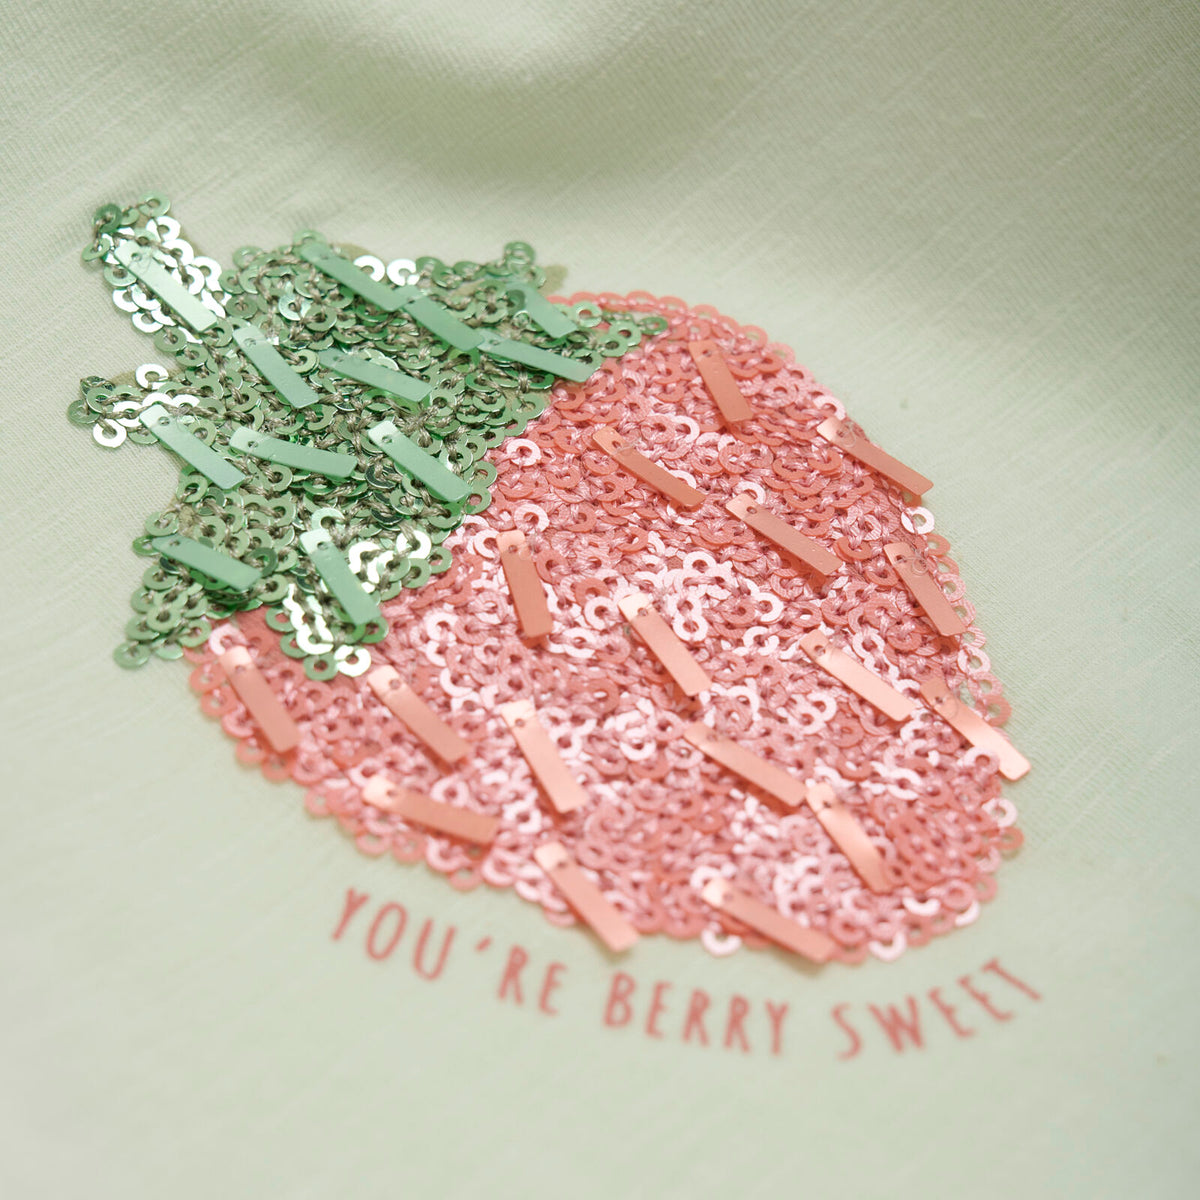 Das Shirt ist ein echter Hingucker - mit Pailletten in Form einer Erdbeere auf der Brust und dem Spruch "You're berry sweet". Ein toller Sommerstyle.